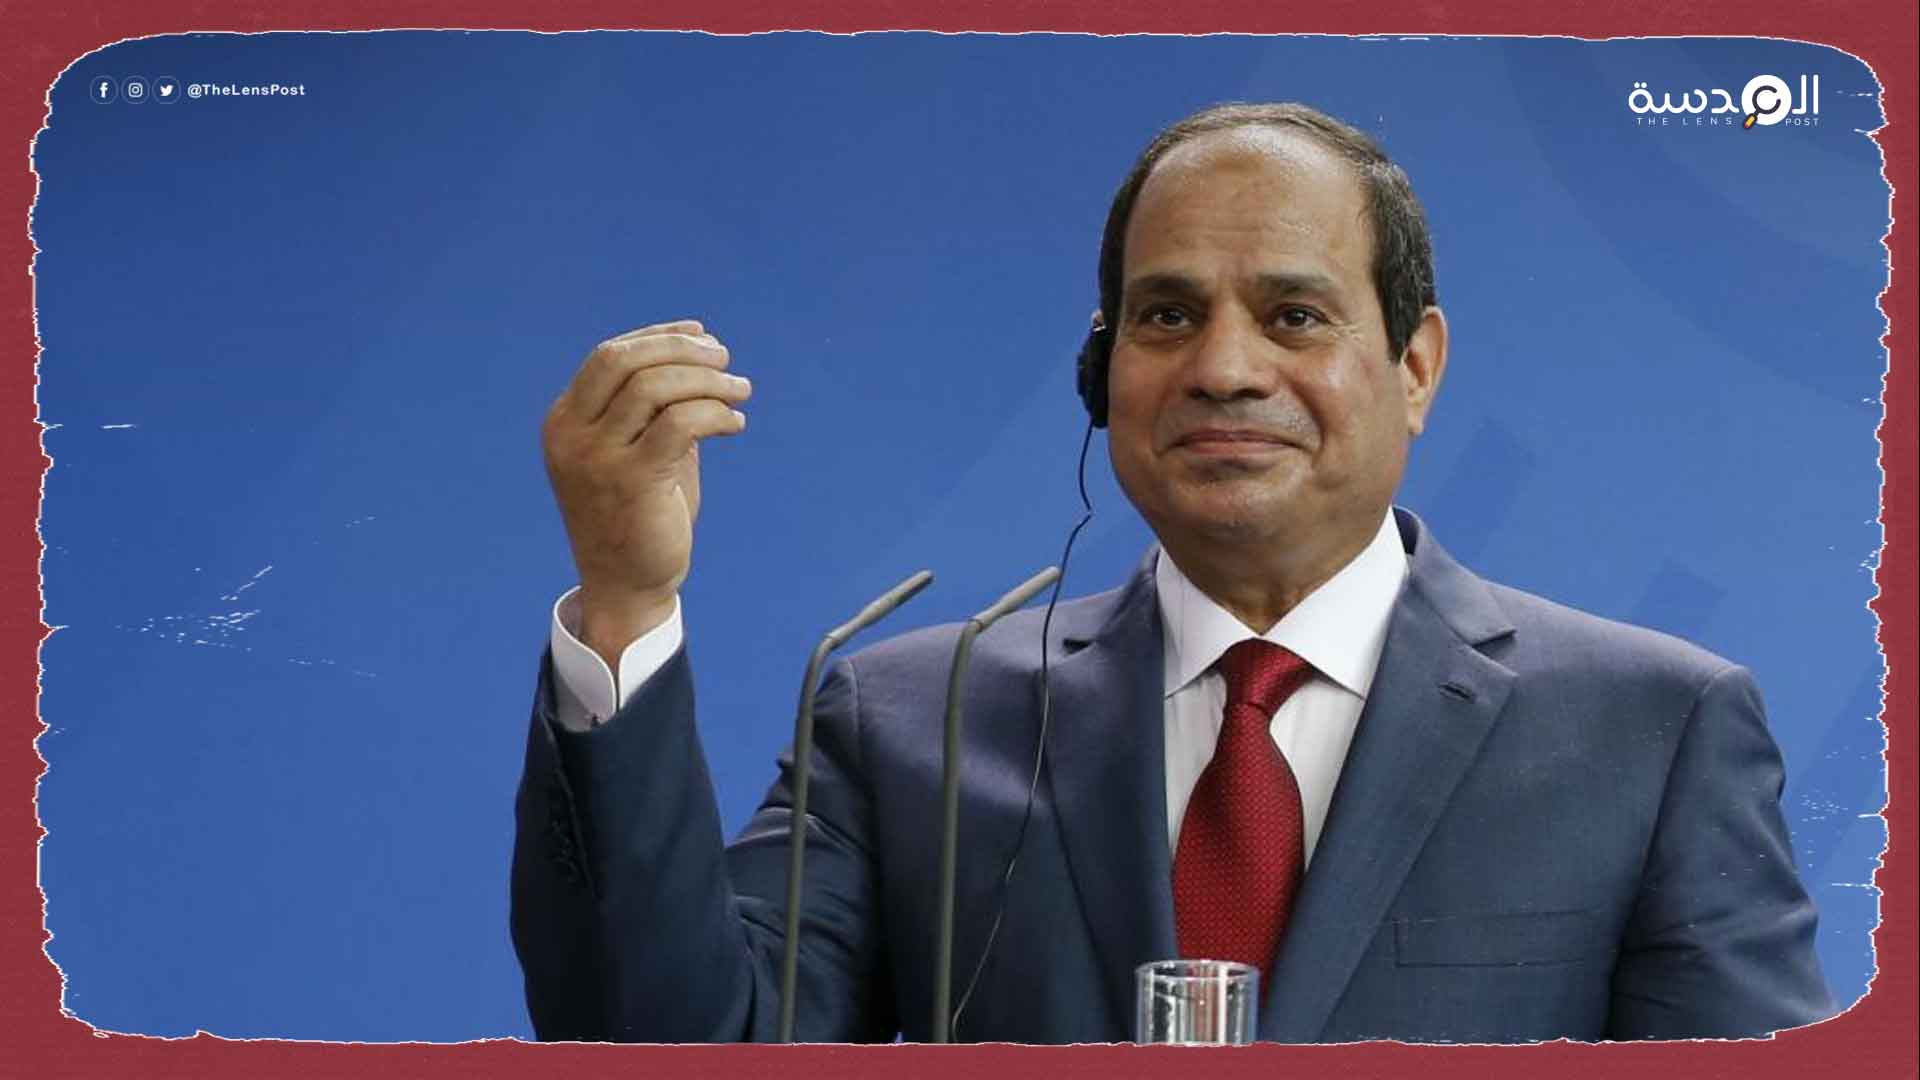 دويتشه فيله: اقتصاد مصر مدمر مثل نظيره اللبناني